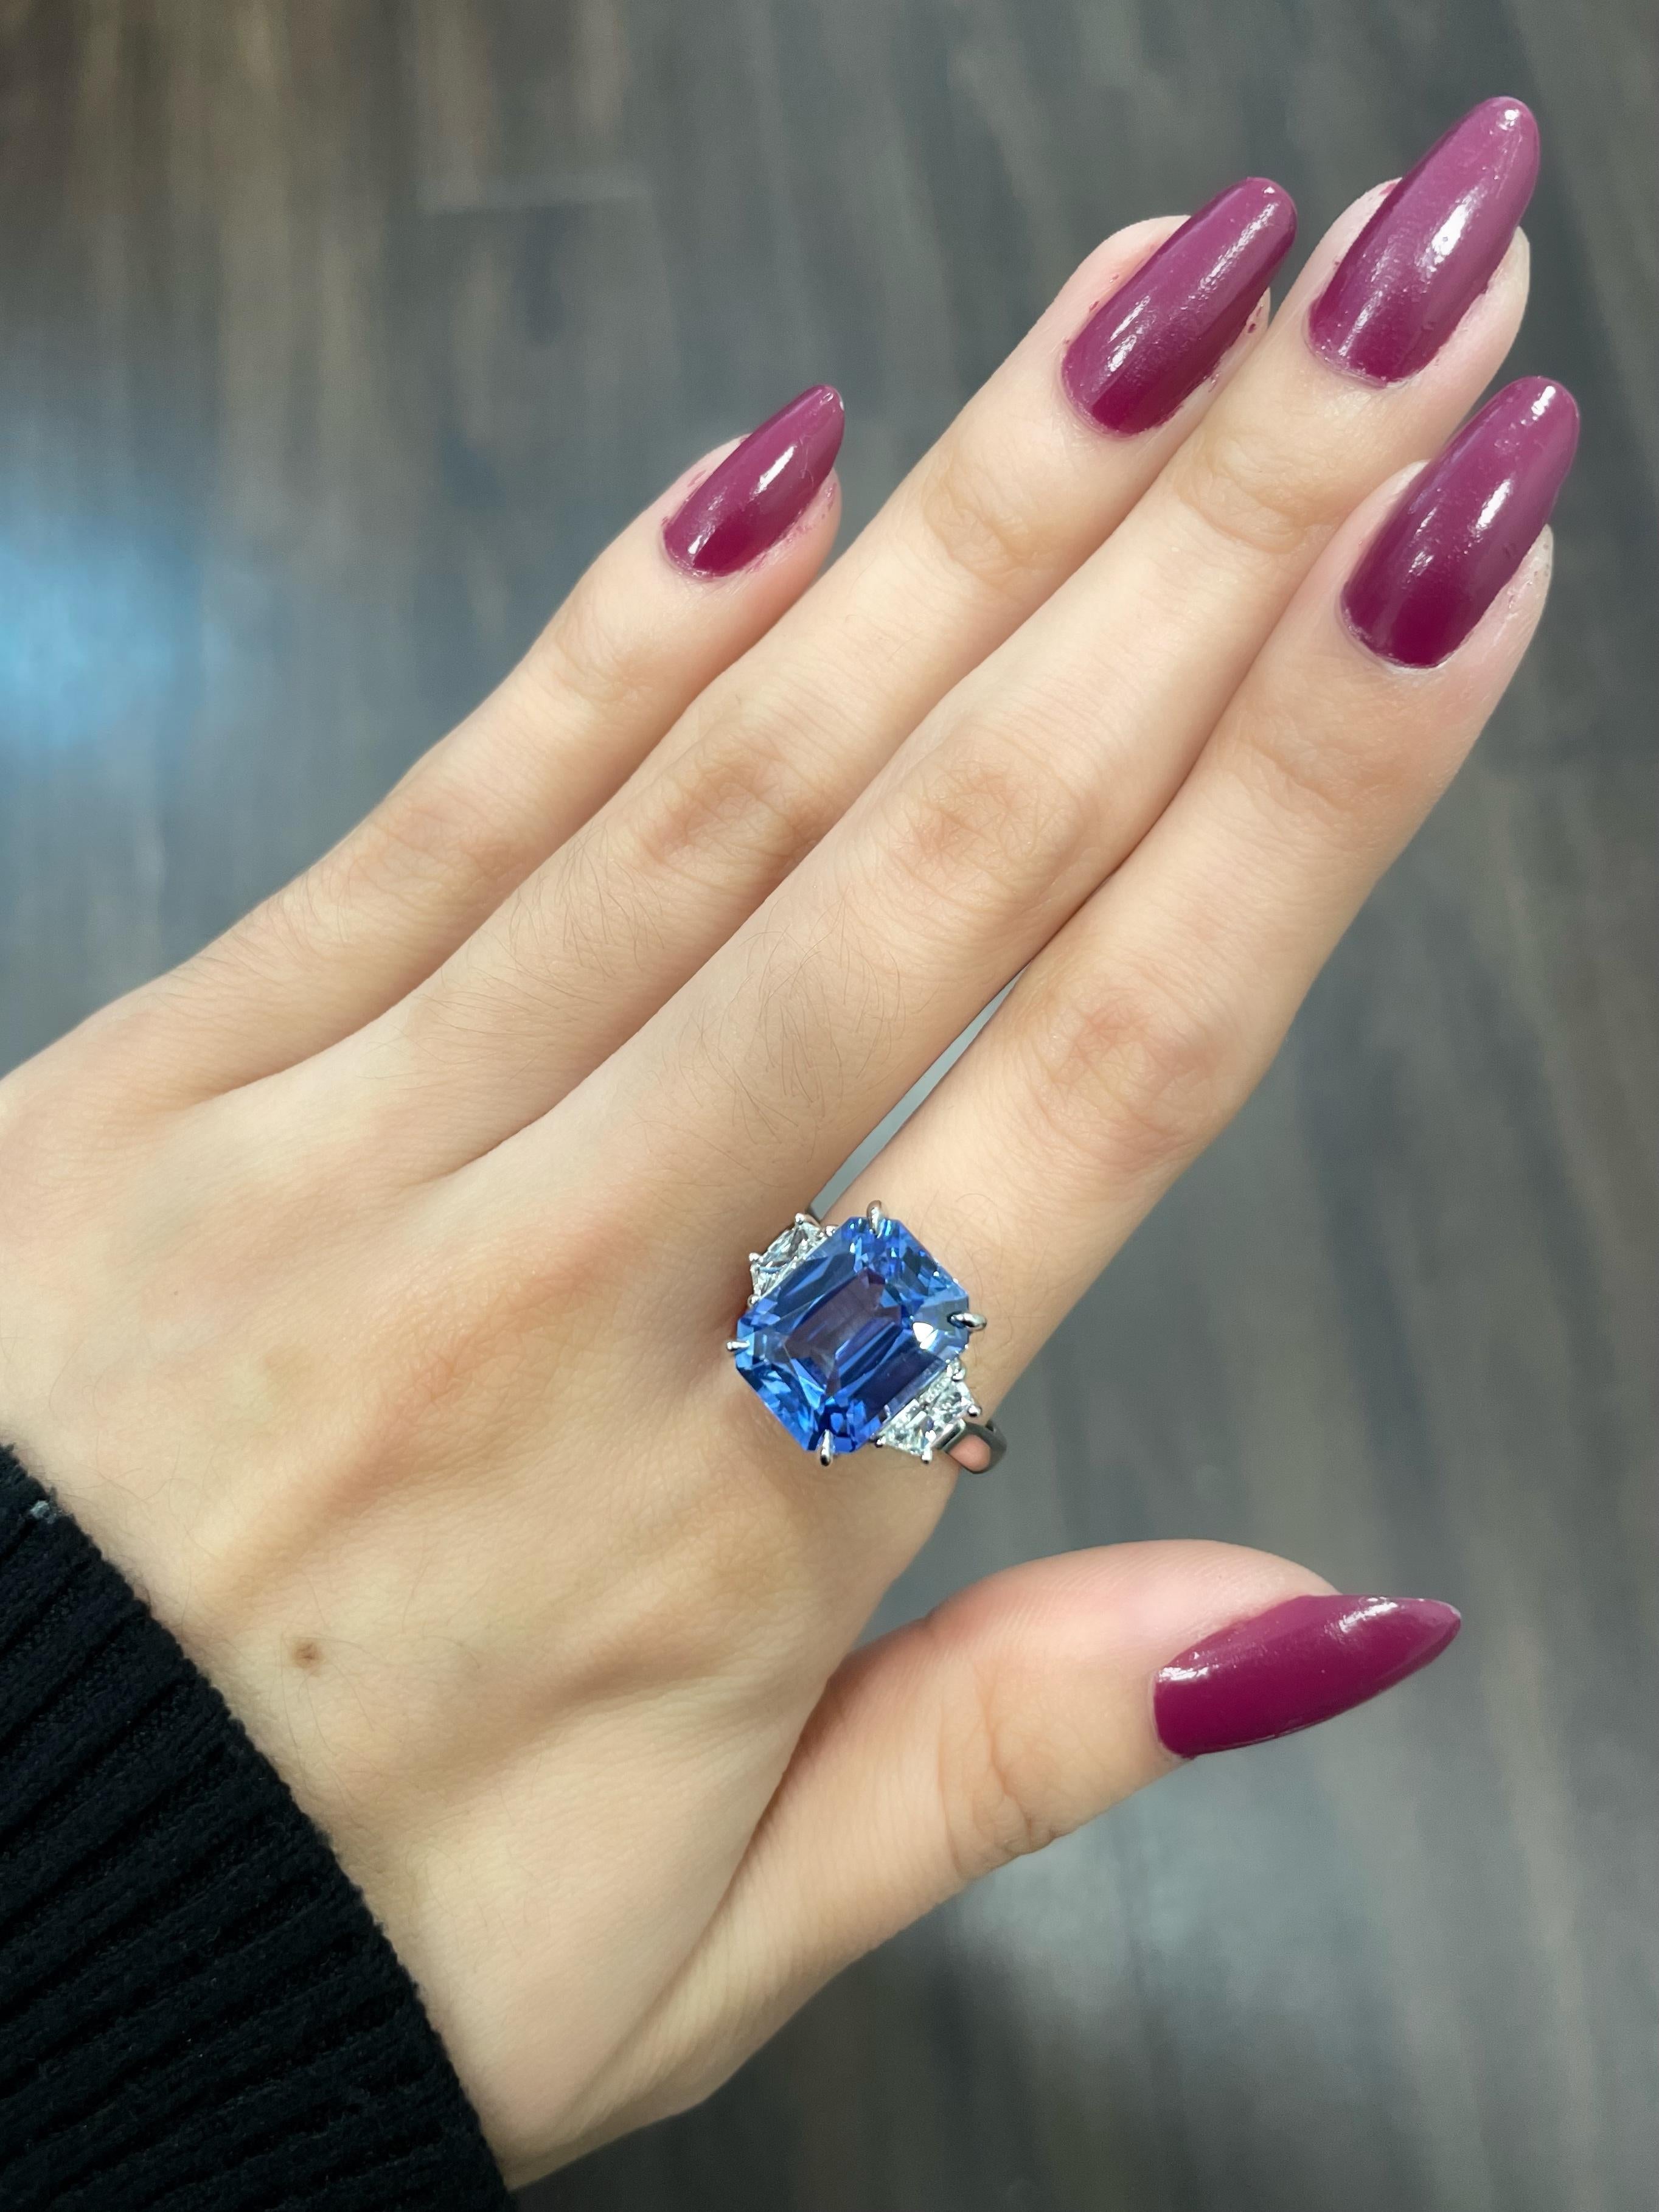 Der Ring mit einem blauen Ceylon-Saphir und Diamanten von 7,45 Karat ist ein atemberaubendes Schmuckstück, das Ihnen den Atem rauben wird. Die tiefblaue Farbe des Saphirs ist wirklich faszinierend und zieht jeden Blick auf sich, der ihn sieht. Der